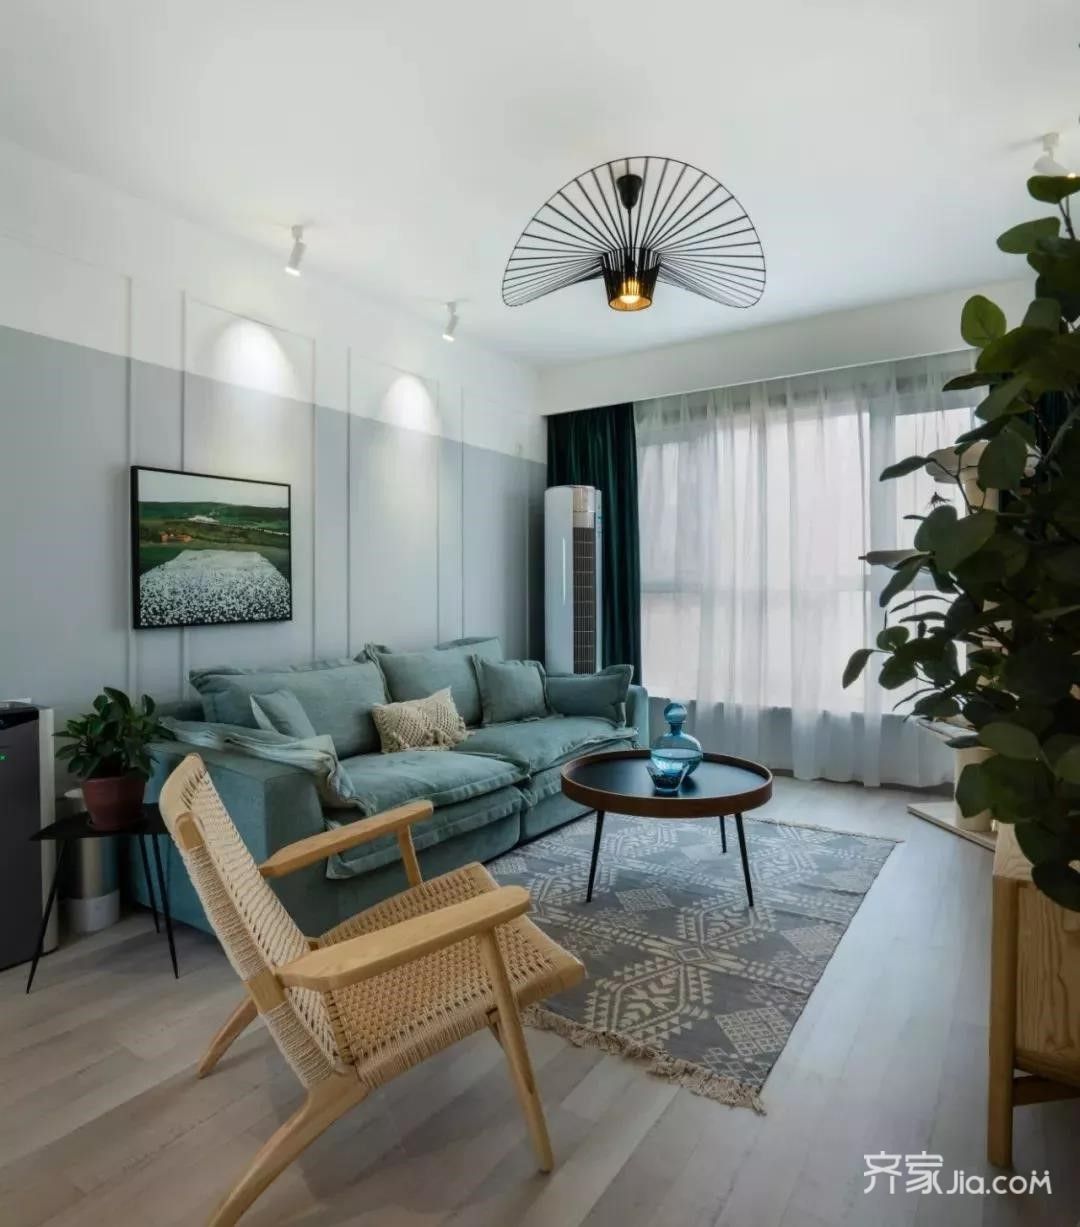 宽敞的客厅,整体以莫兰迪色系的雾霾蓝搭配木质家具和绿植,自然又